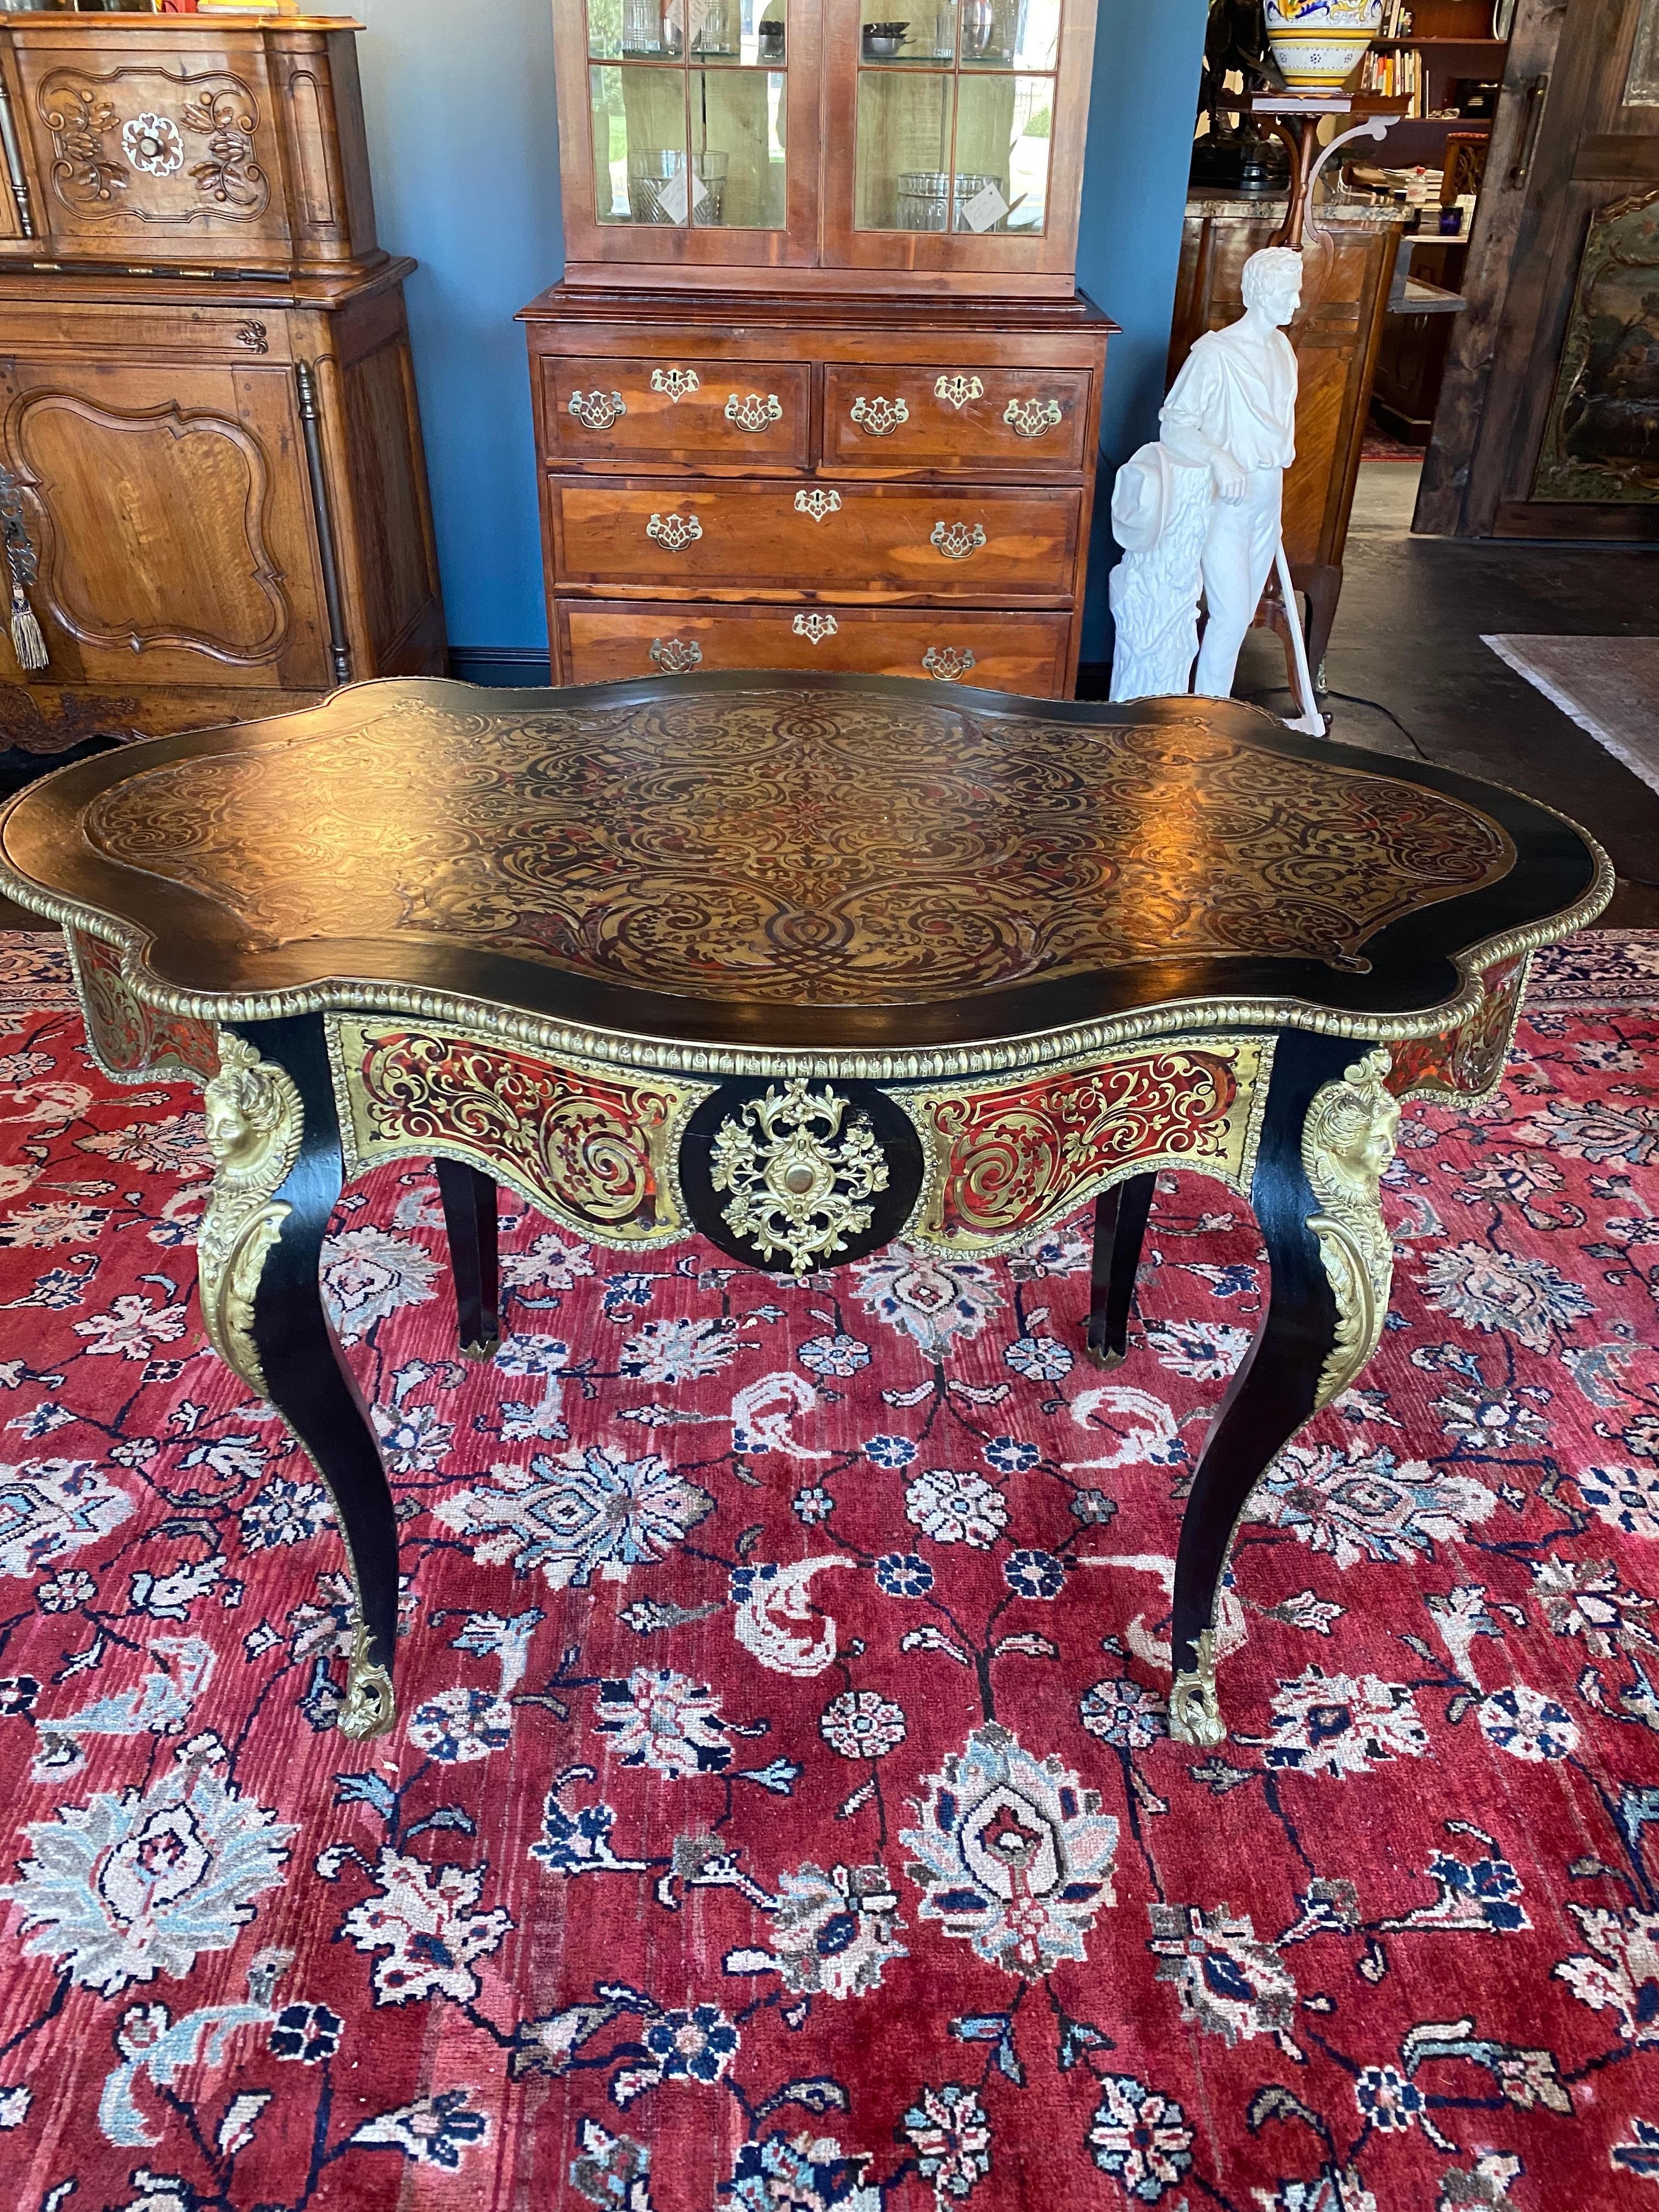 Gut erhaltener ebonisierter Napoleon III Bedel & Cie Pariser Boulle-Stil-Mitteltisch. Eine mittlere Schublade, vier Kabriolettbeine. Der Tisch ist reich verziert mit bronzenen Säbeln, Kniebeschlägen und Randleisten. Der Deckel ist aus Messing und